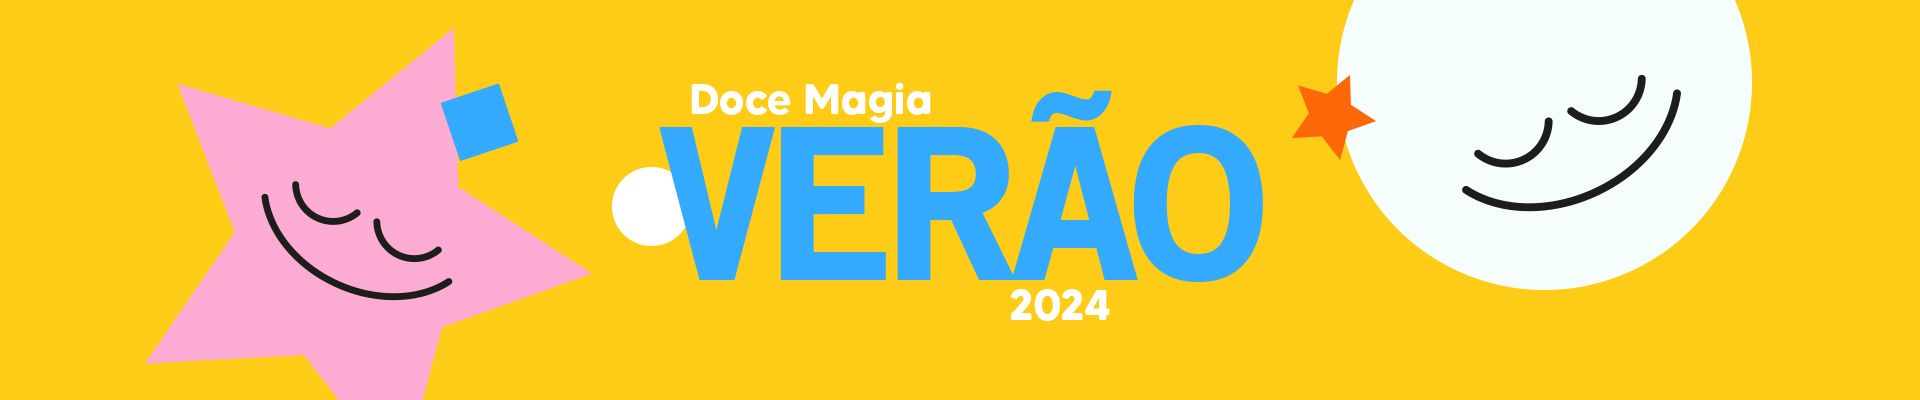 Doce Magia - Verão 2024